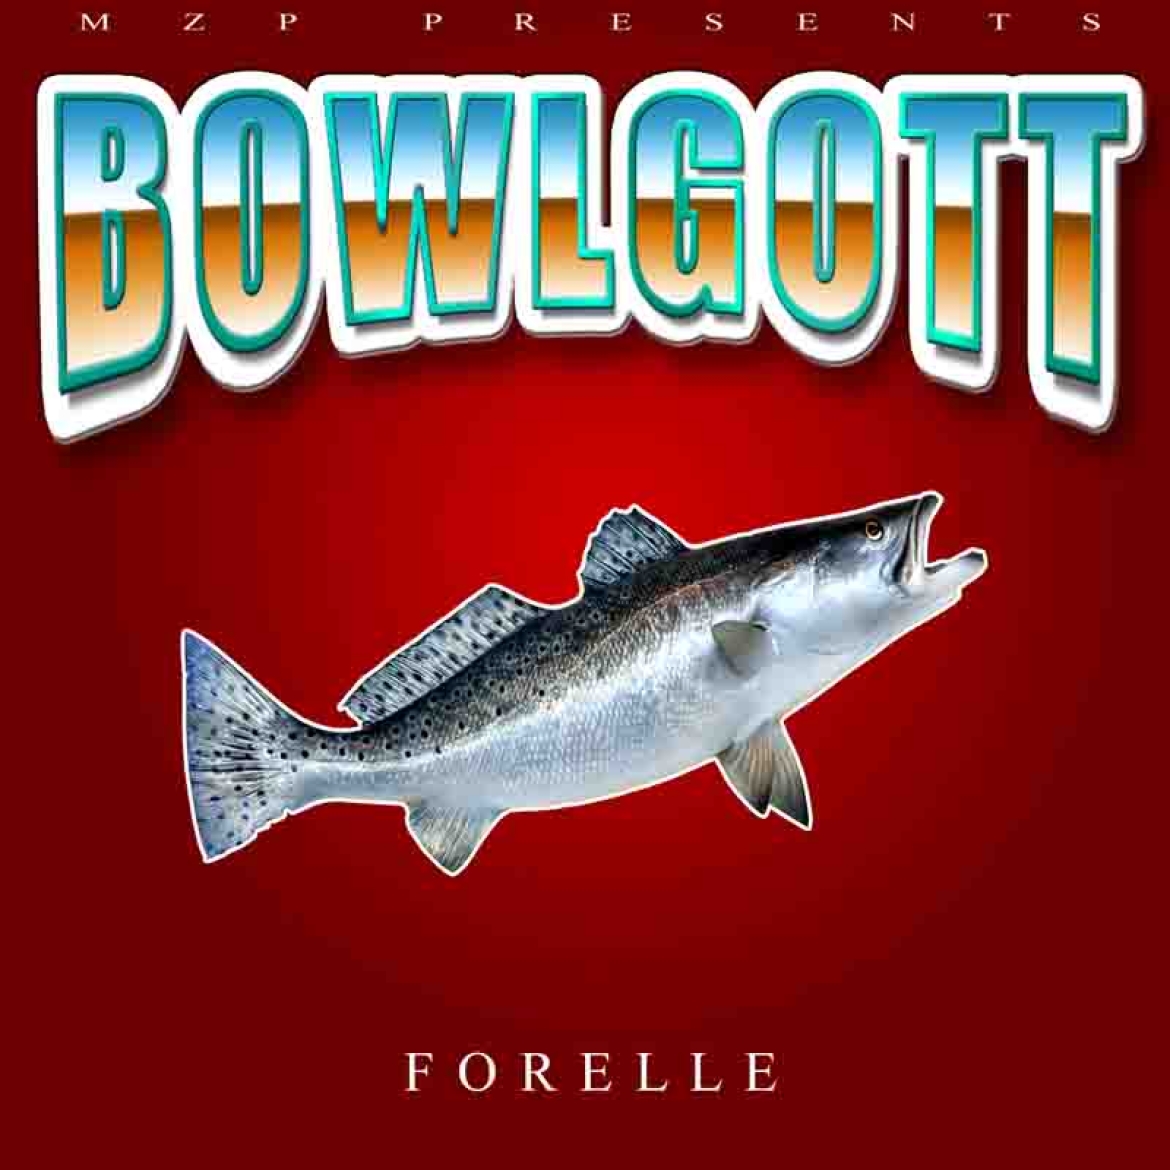 Bowlgott Forelle